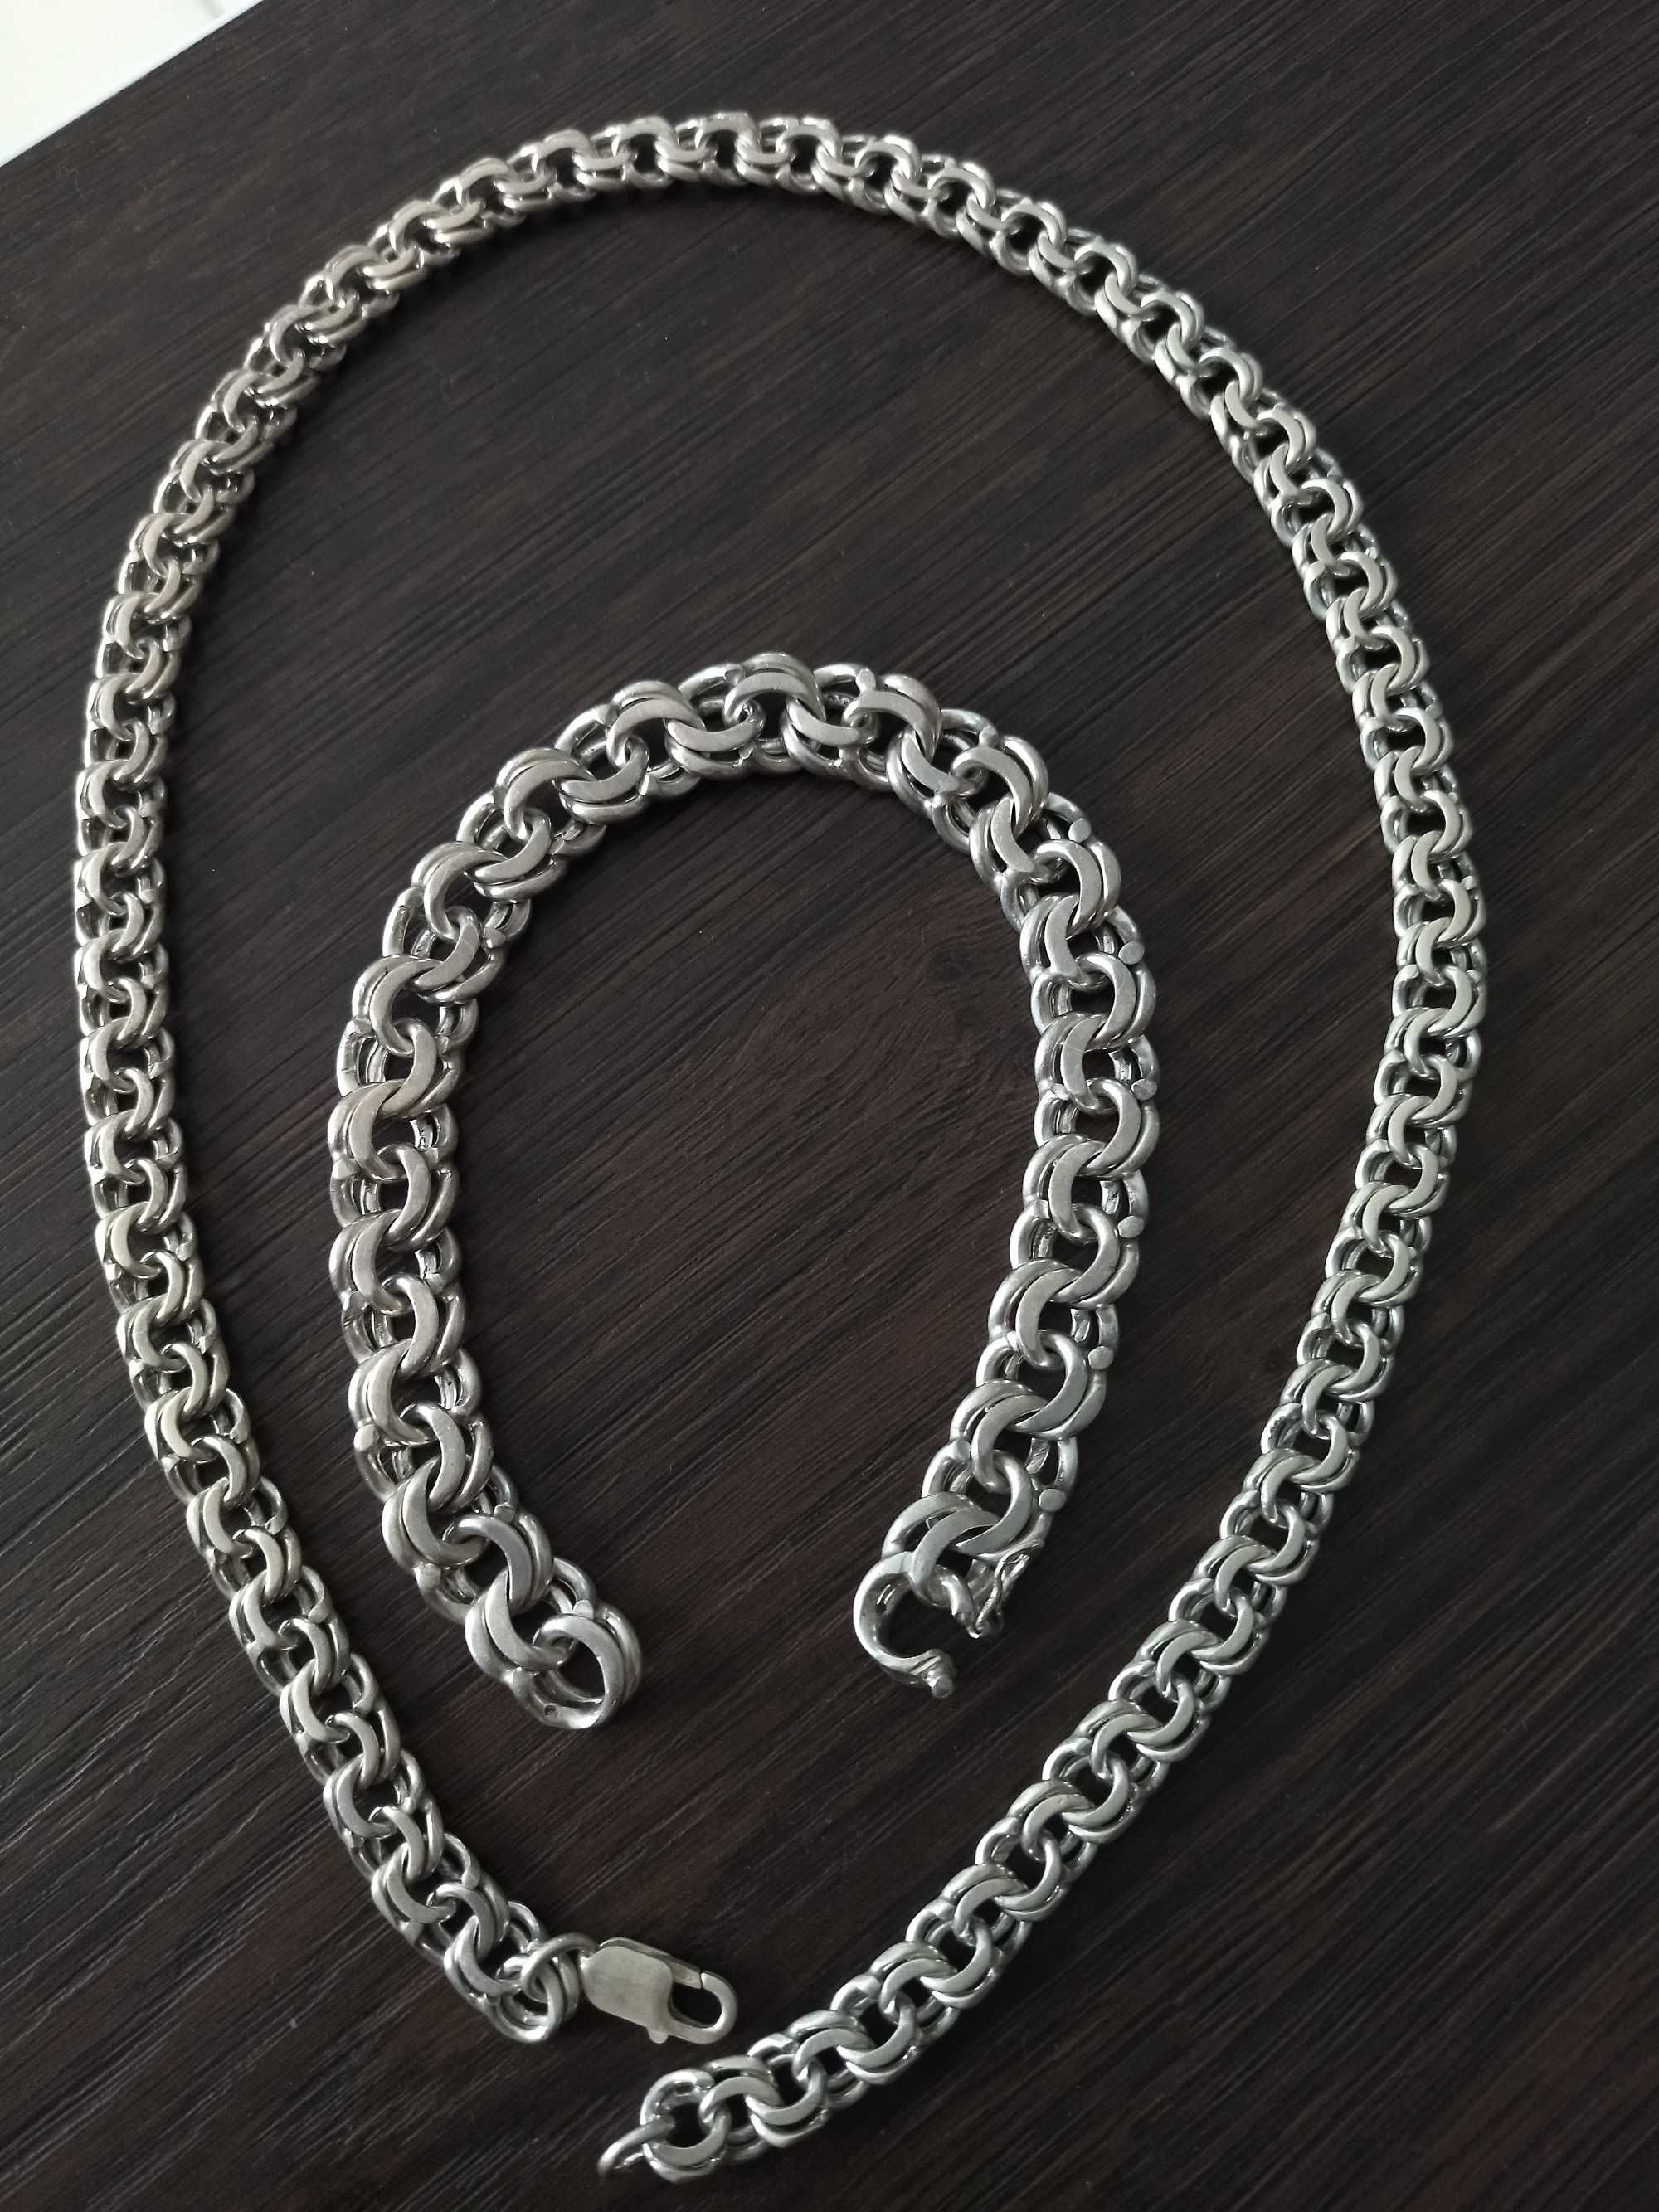 Łańcuch srebrny męski i bransoleta